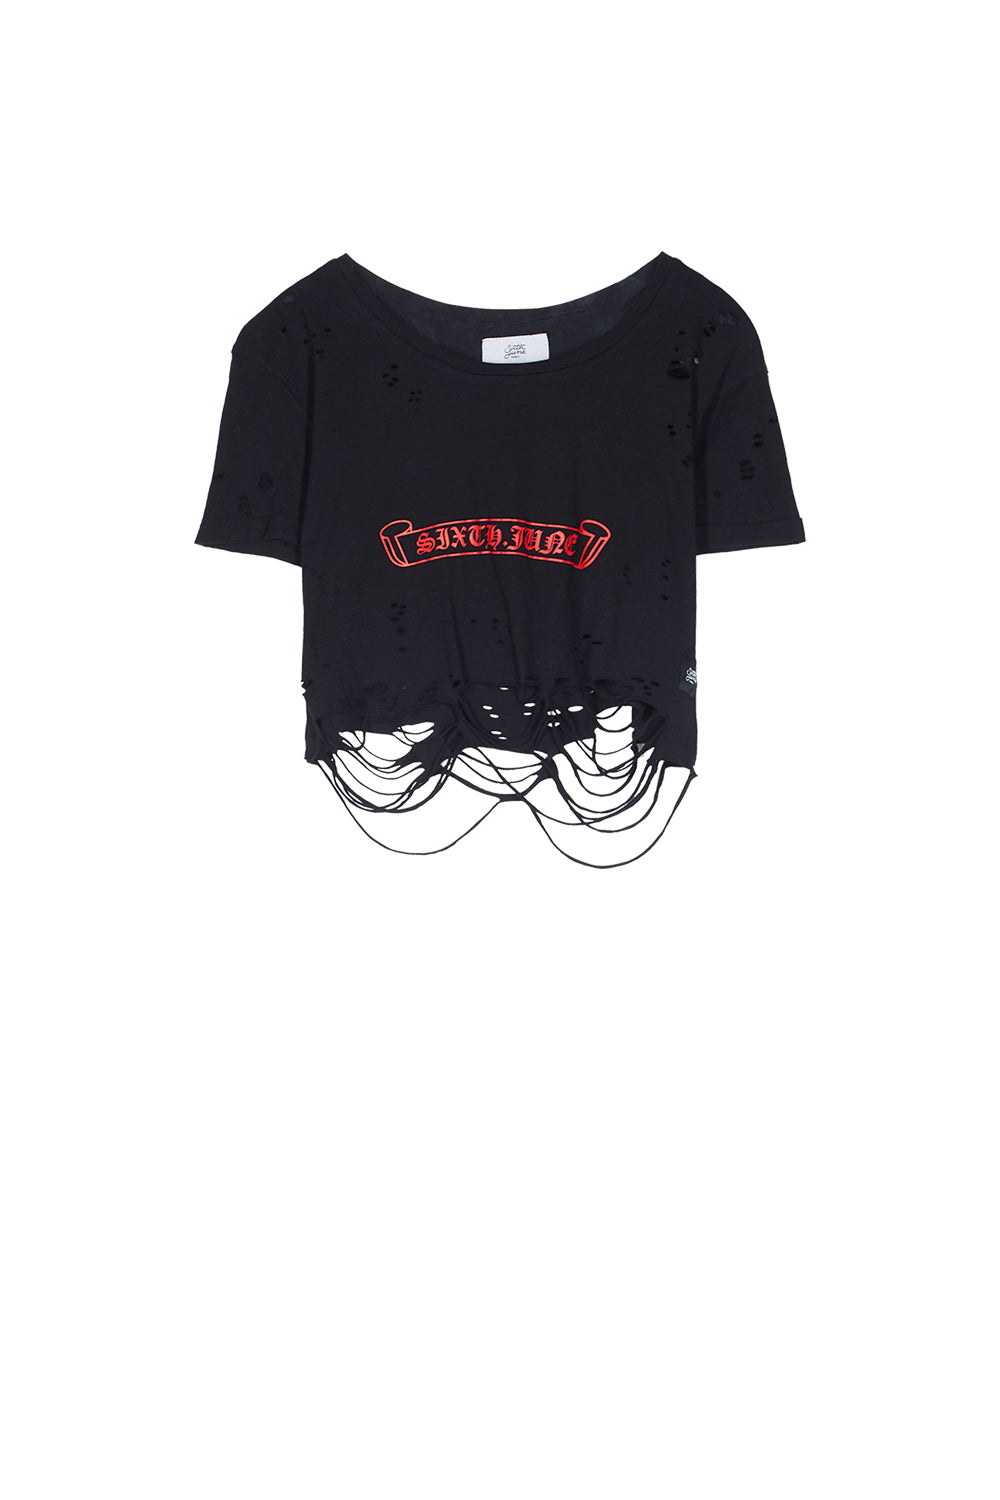 Sixth June - T-shirt crop top destroy logo noir